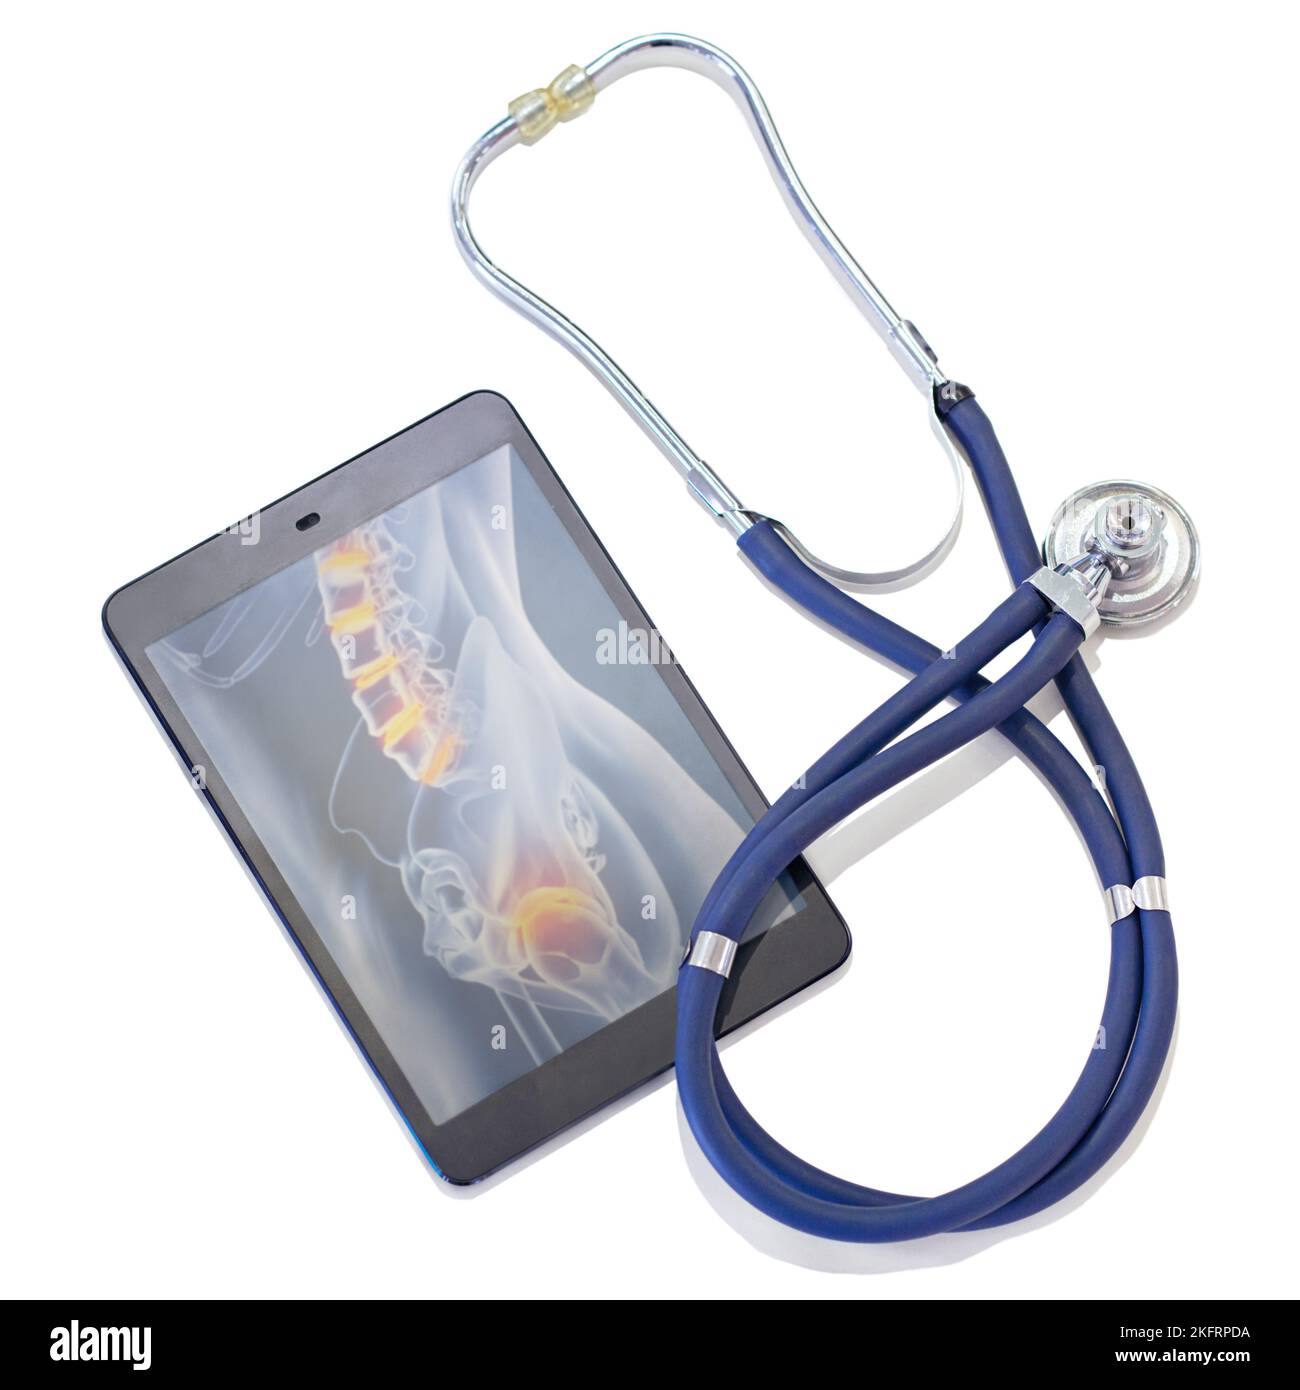 Kombination alter und neuer Technologien für ein besseres Ergebnis. Ein Tablet und ein Stethoskop vor weißem Hintergrund. Stockfoto